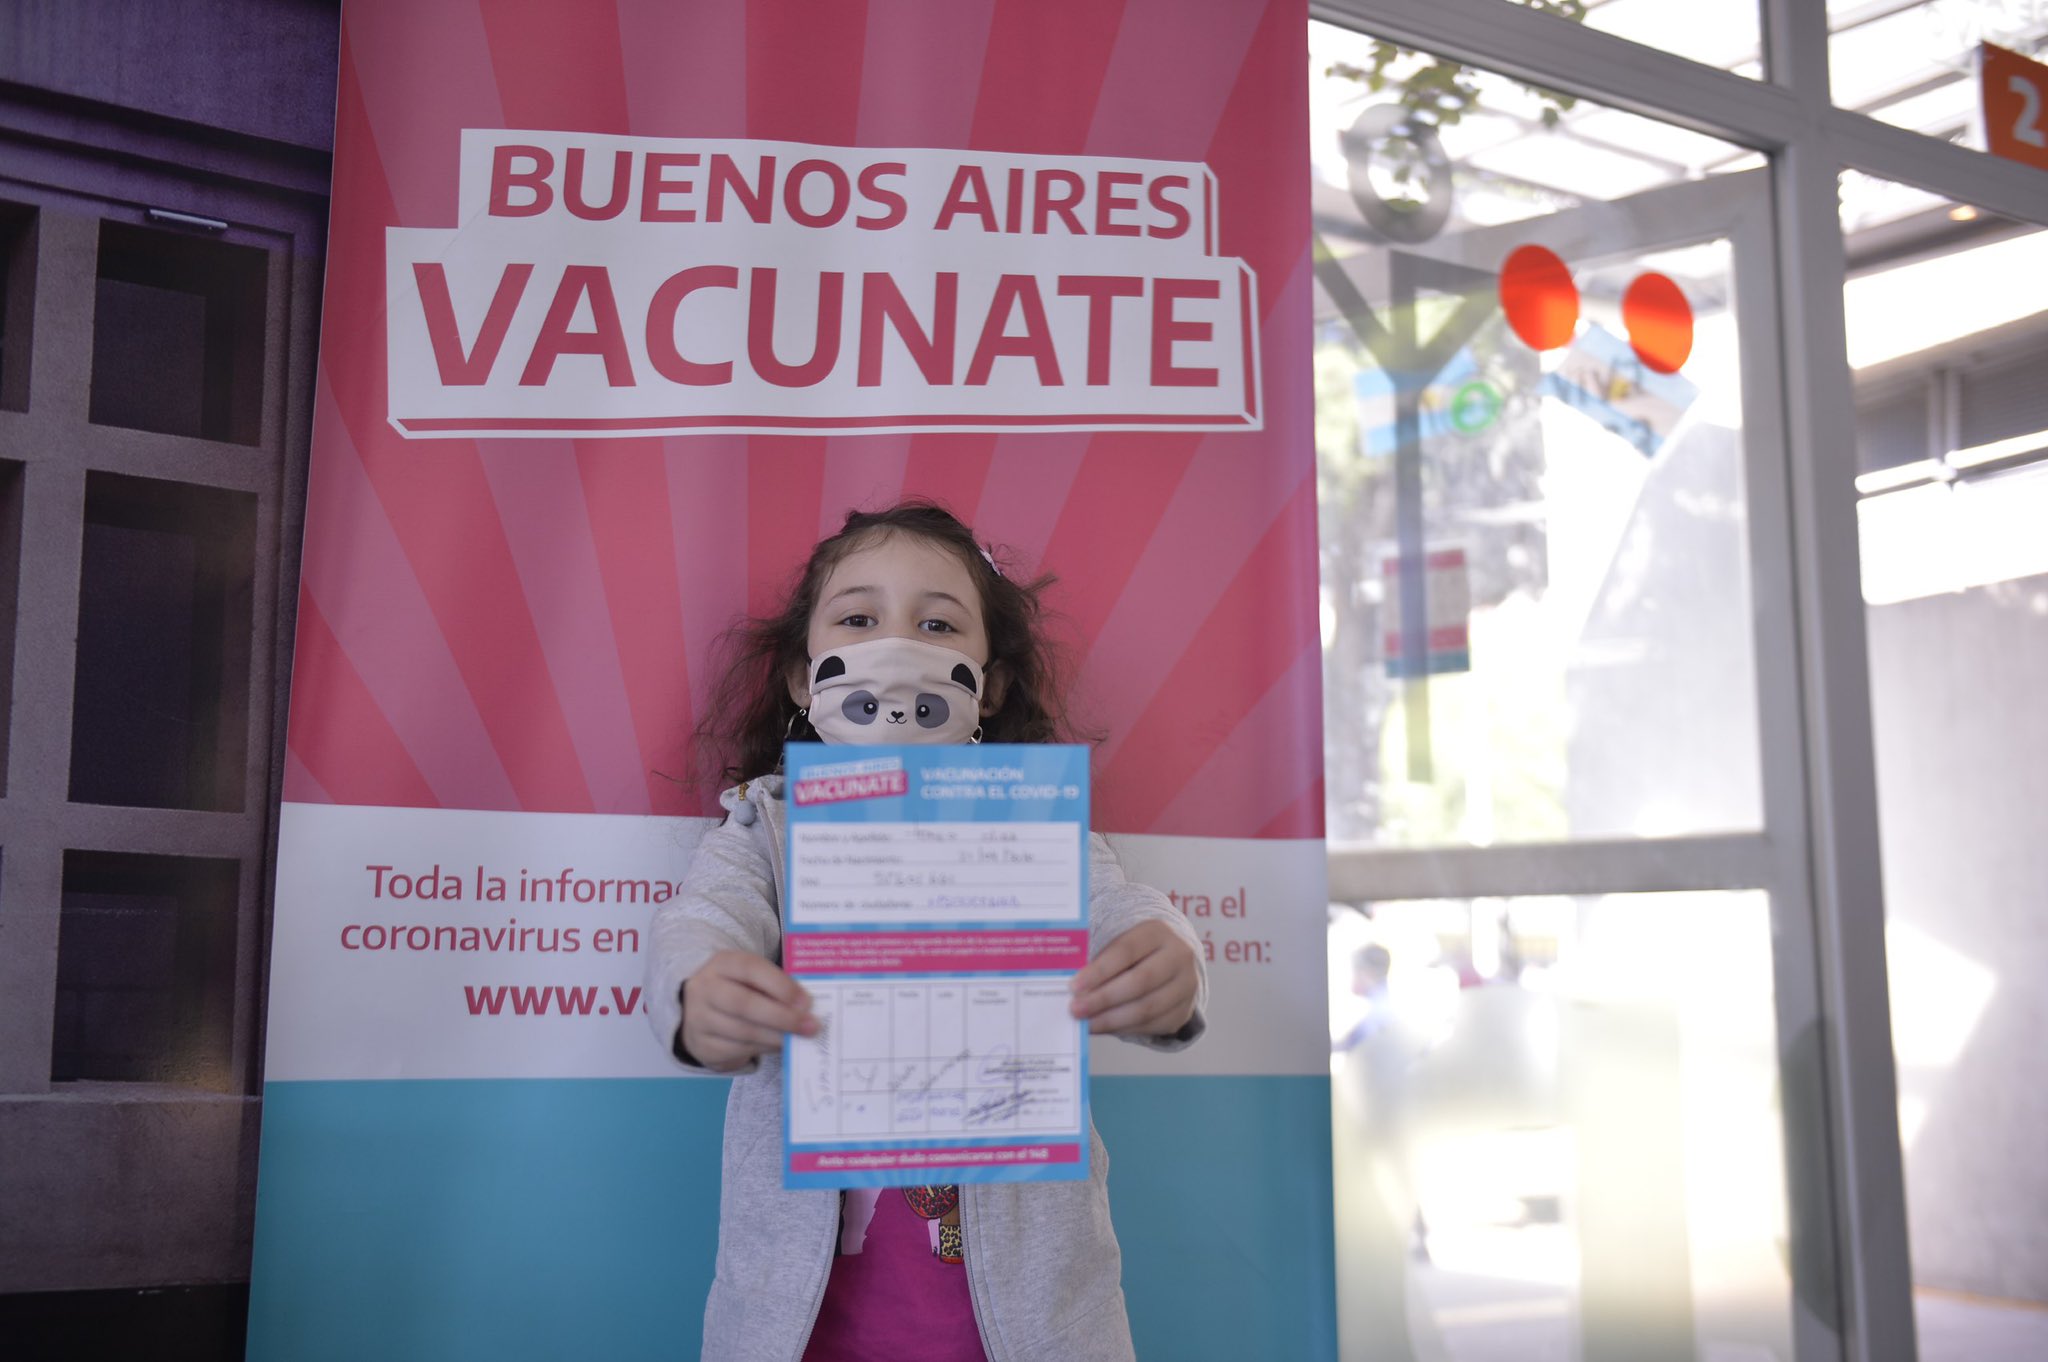 El presidente de la Sociedad de Pediatría pidió vacunar a los niños para "salir de la pandemia"